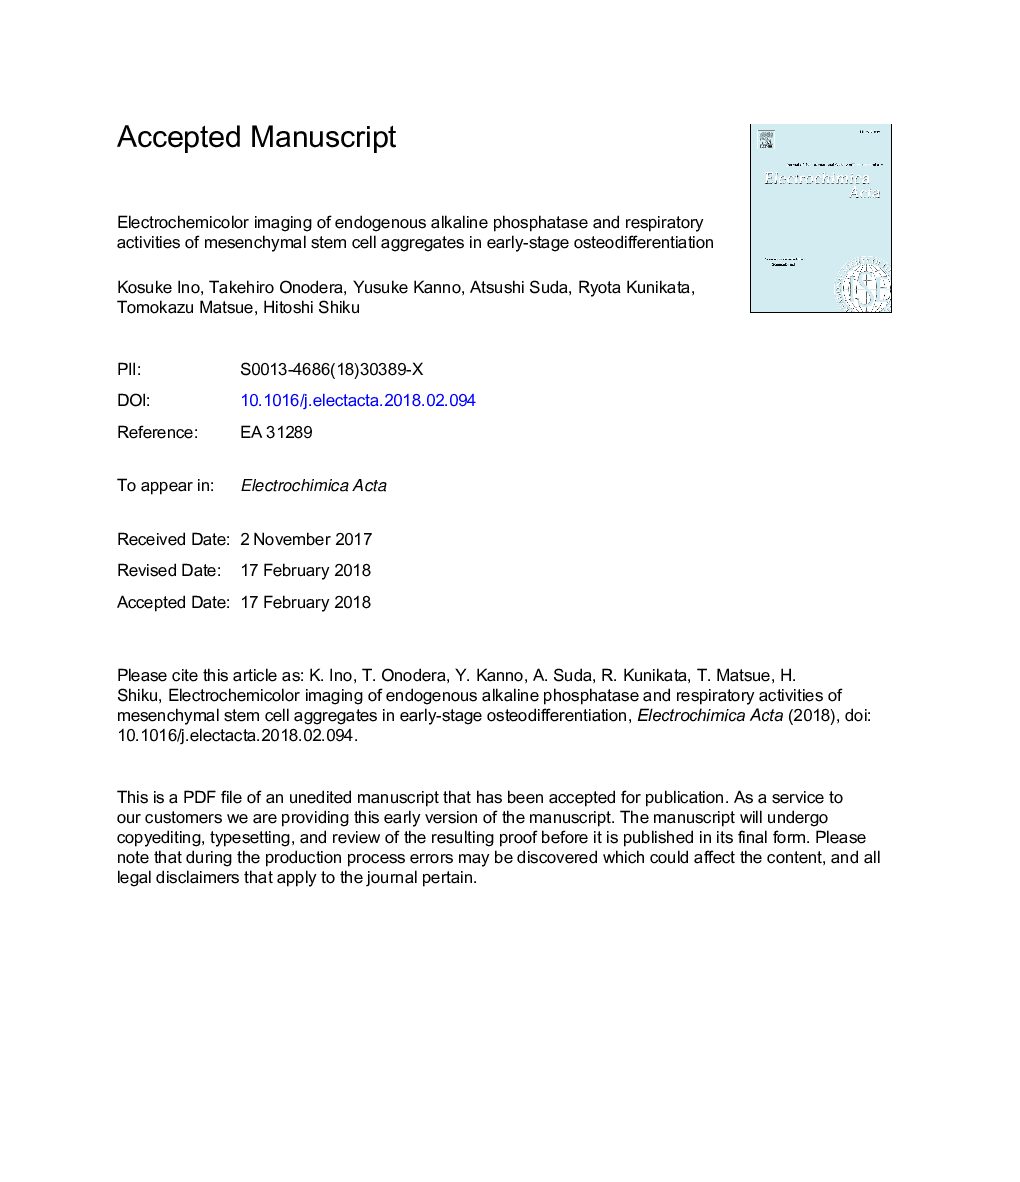 تصویر برداری الکتروشیمیکولر از آلکالین فسفاتاز درون زا و فعالیت های تنفسی مولکول های بنیادی مزانشیمی در تشخیص استئوآرتریت زودرس 